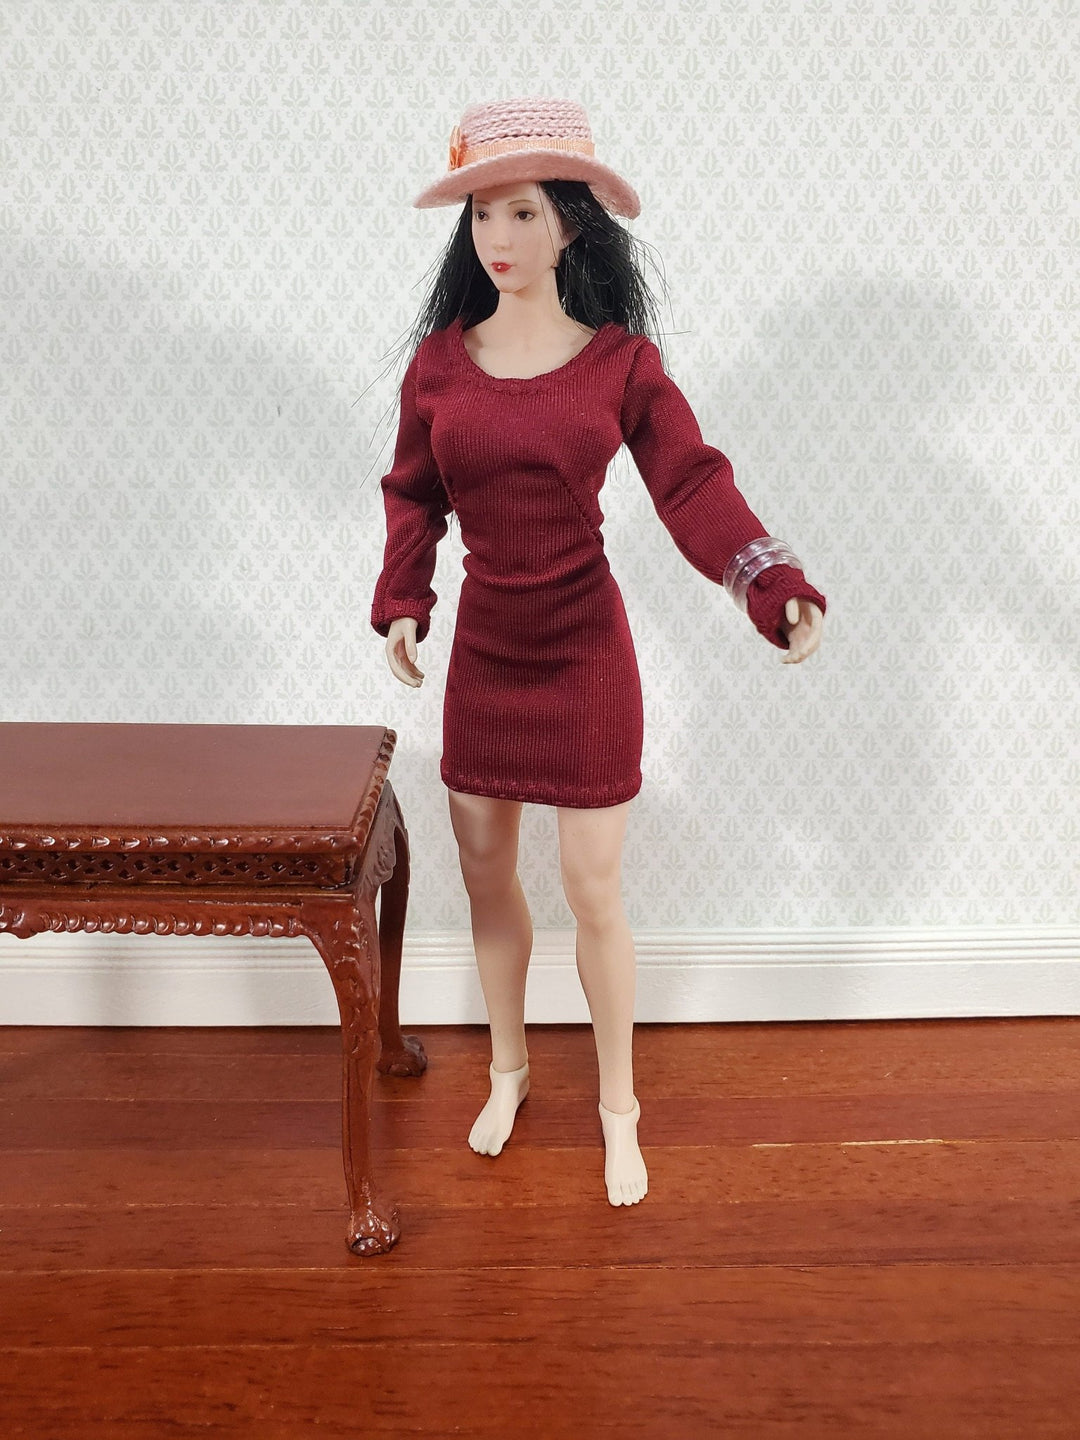 Miniature Ladies Hat Pink fits 6 Phicen TBLeague Female 1:12